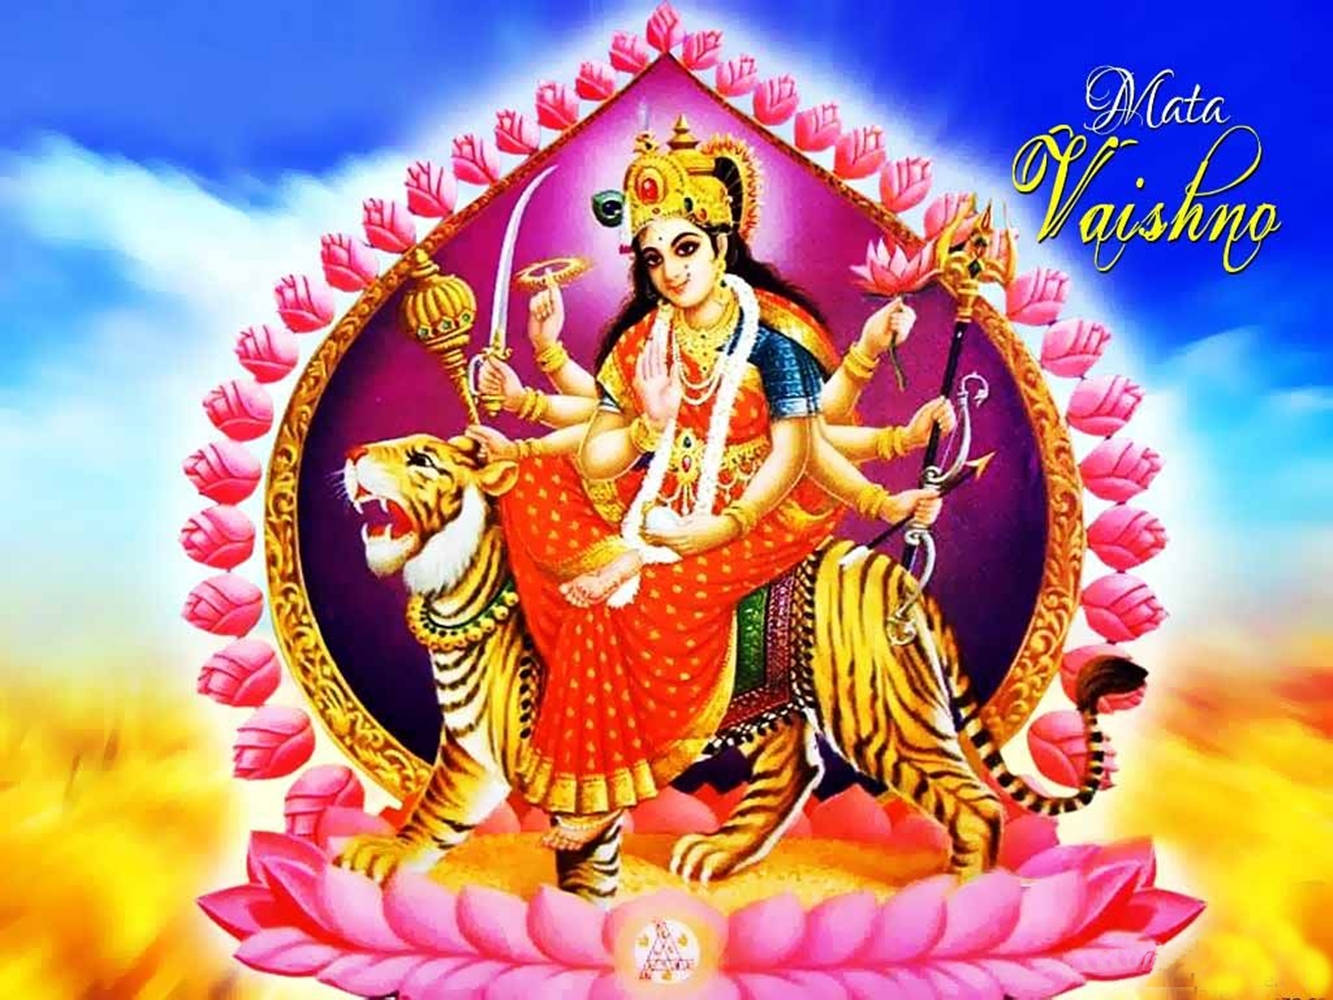 Vaishno Devi sidder på en voldsom tiger Wallpaper